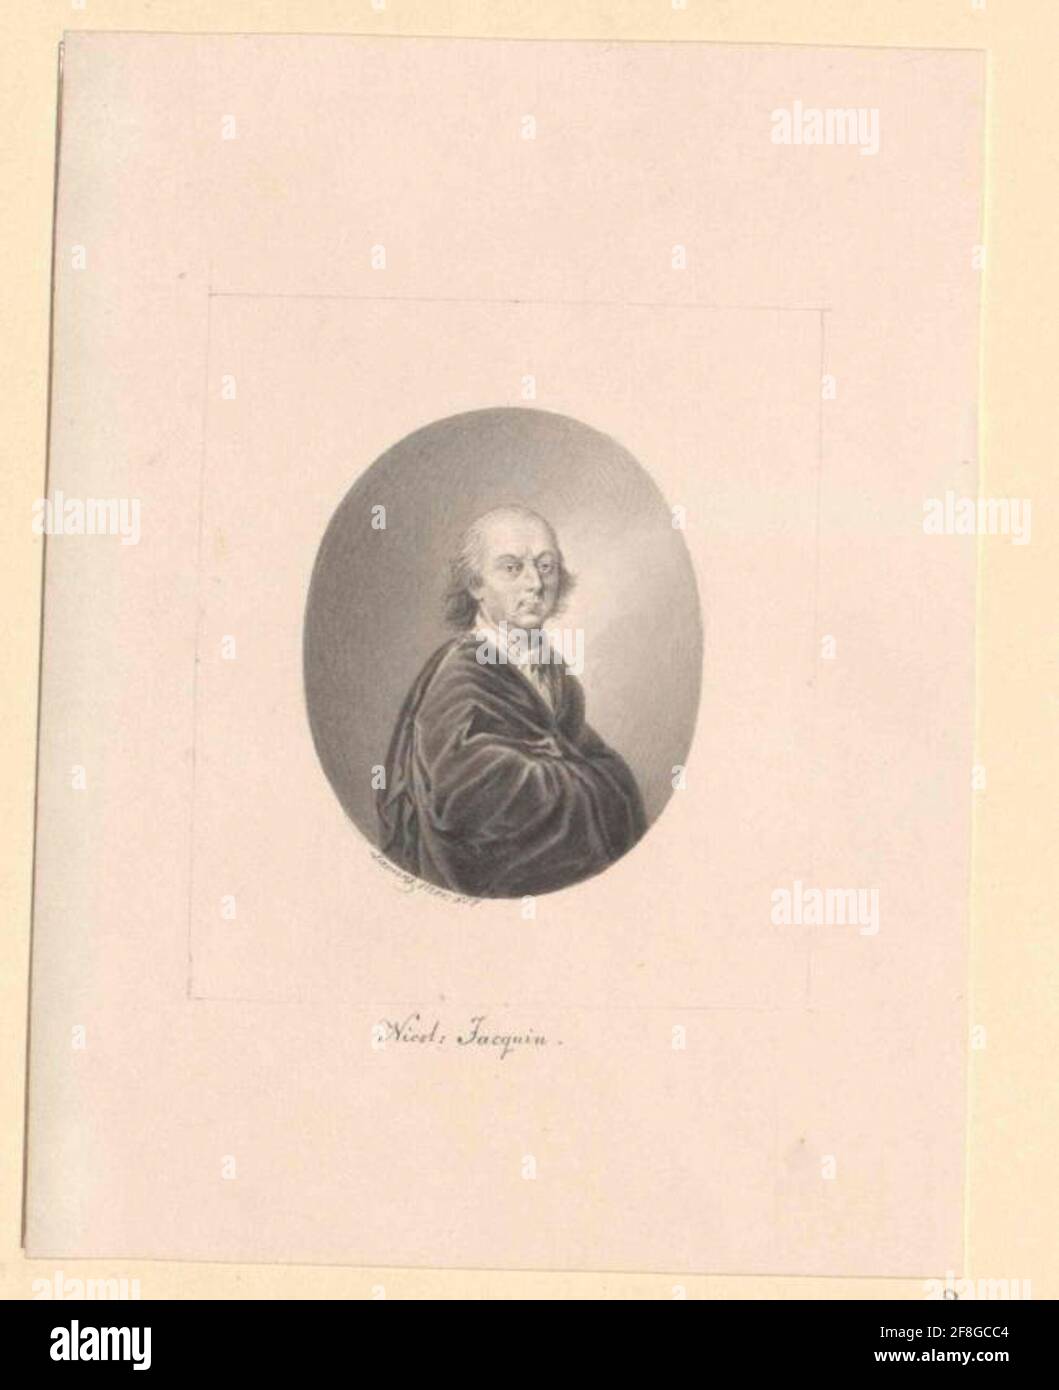 Jacquin, Nikolaus Joseph Freiherr von. Stock Photo